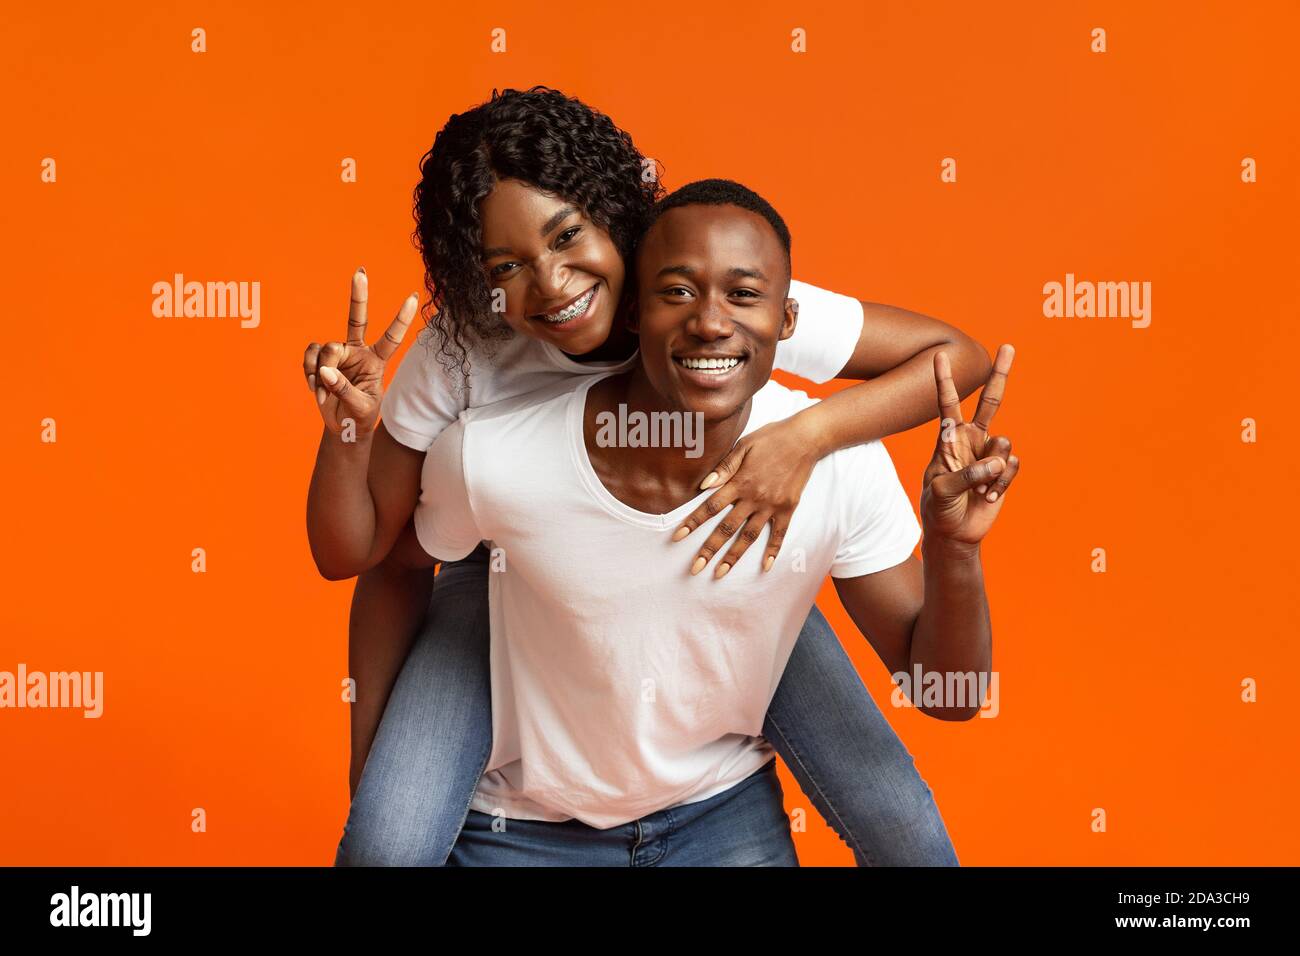 Happy black lovers posing on orange studio background Stock Photo